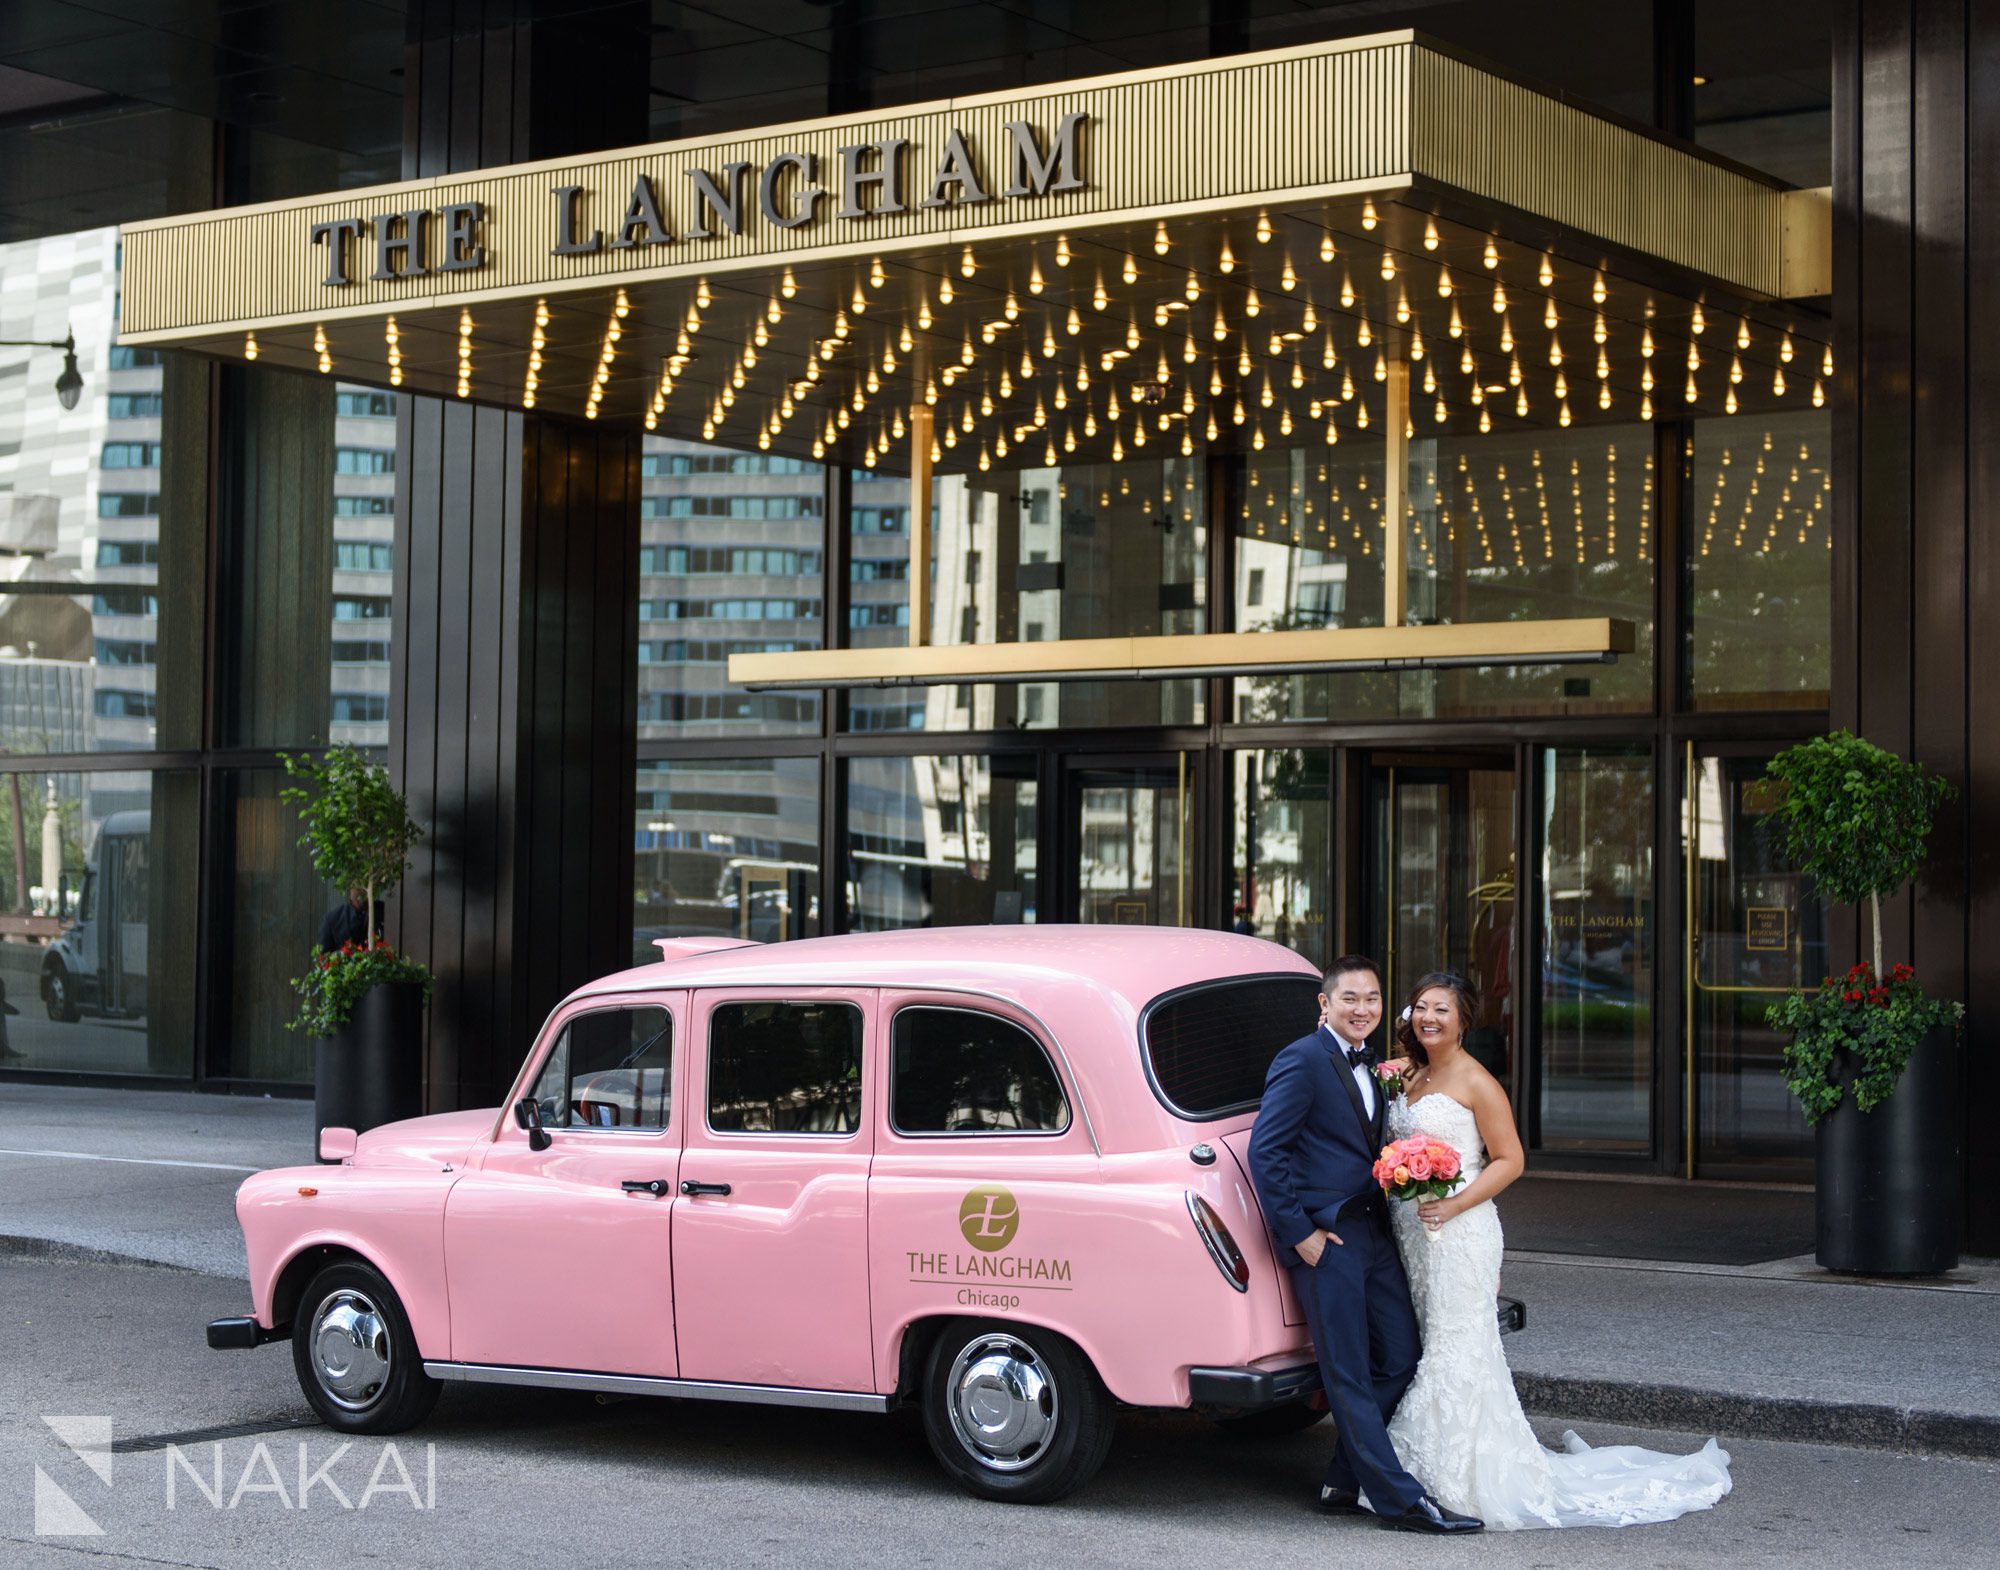 Langham Chicago wedding photos pink taxi asian